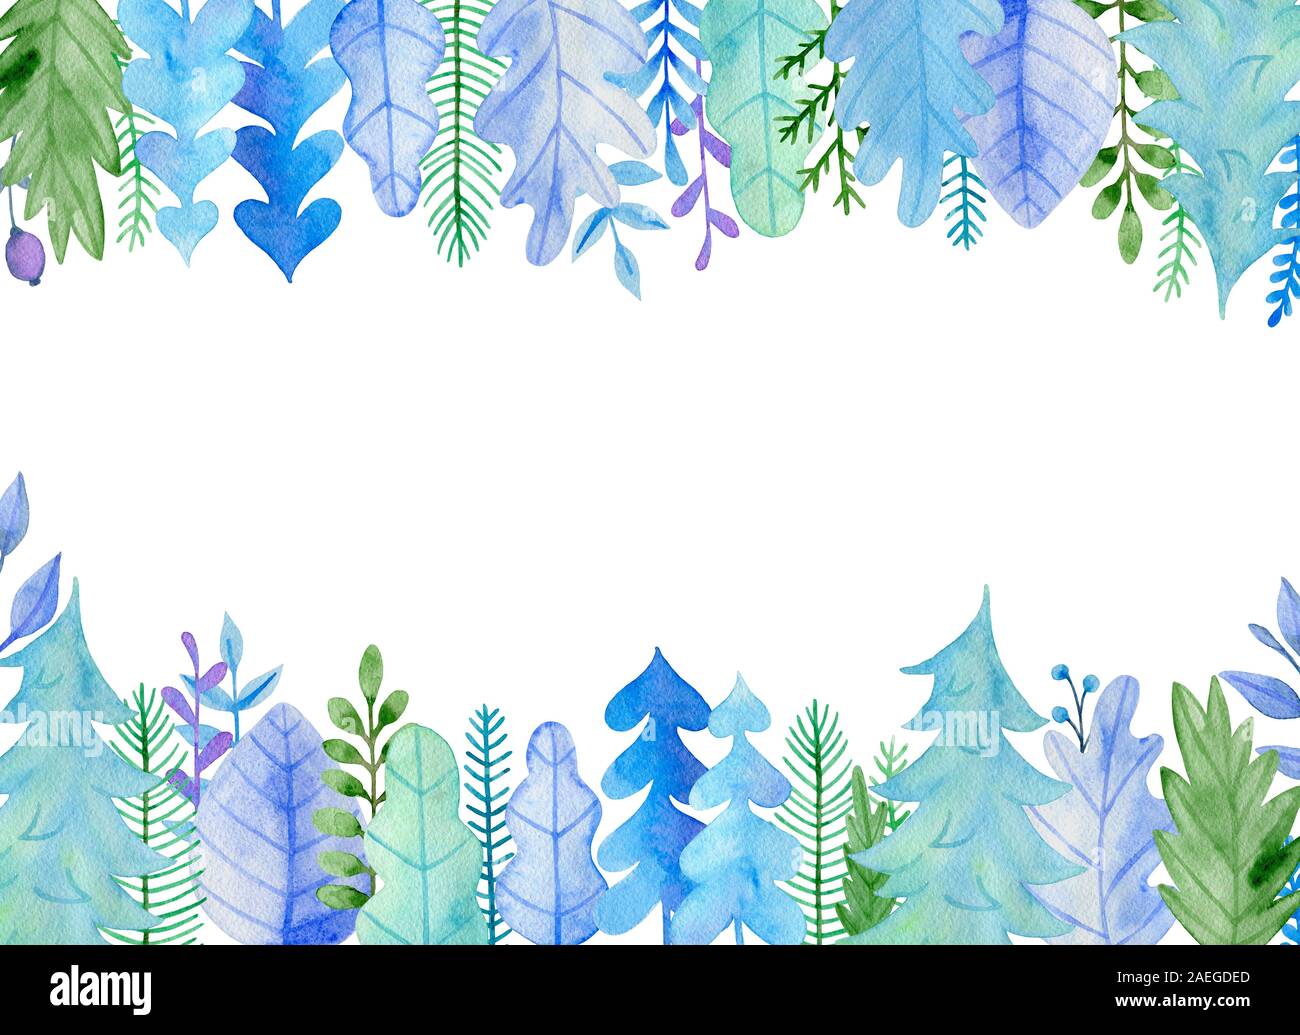 Aquarelle Noël et nouvel an carte de souhaits avec feuilles bleu et de sapin. La main d'hiver décoration floral frame Banque D'Images